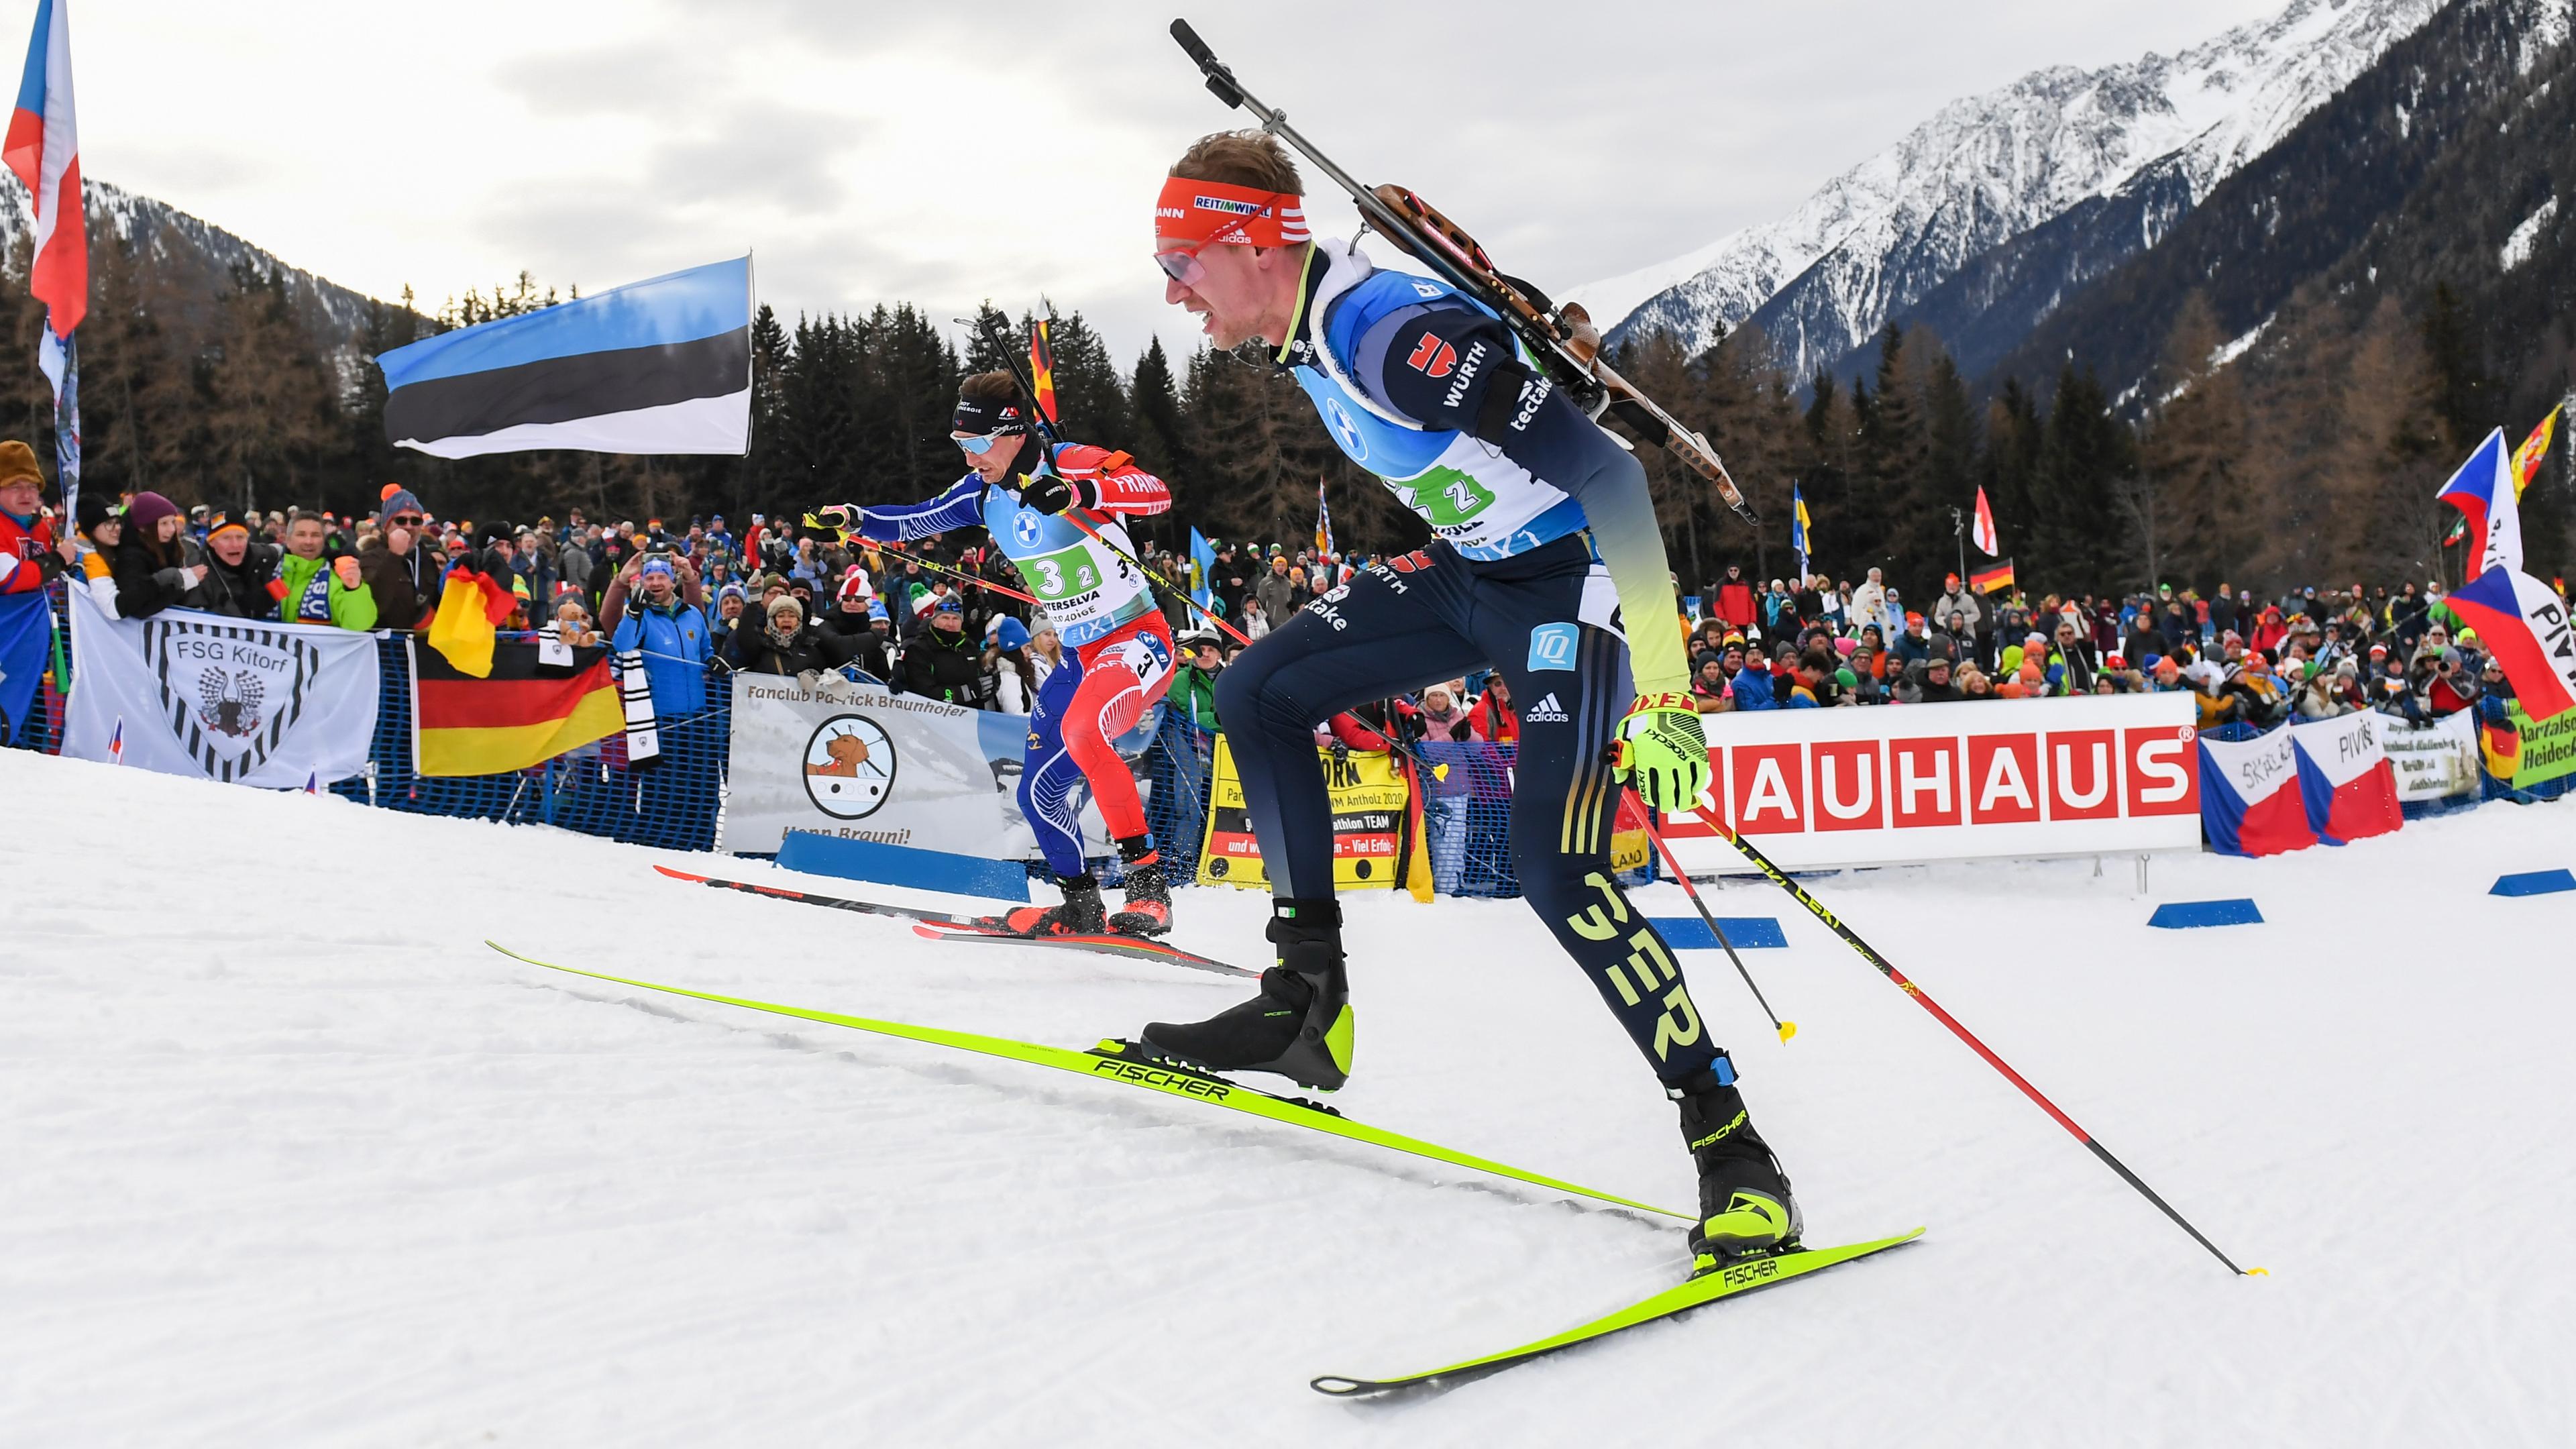 22.01.2023, Italien, Antholz: Biathlon: Weltcup, Staffel 4 x 7,5 km, Herren. Johannes Kühn aus Deutschland ist auf der Strecke unterwegs.